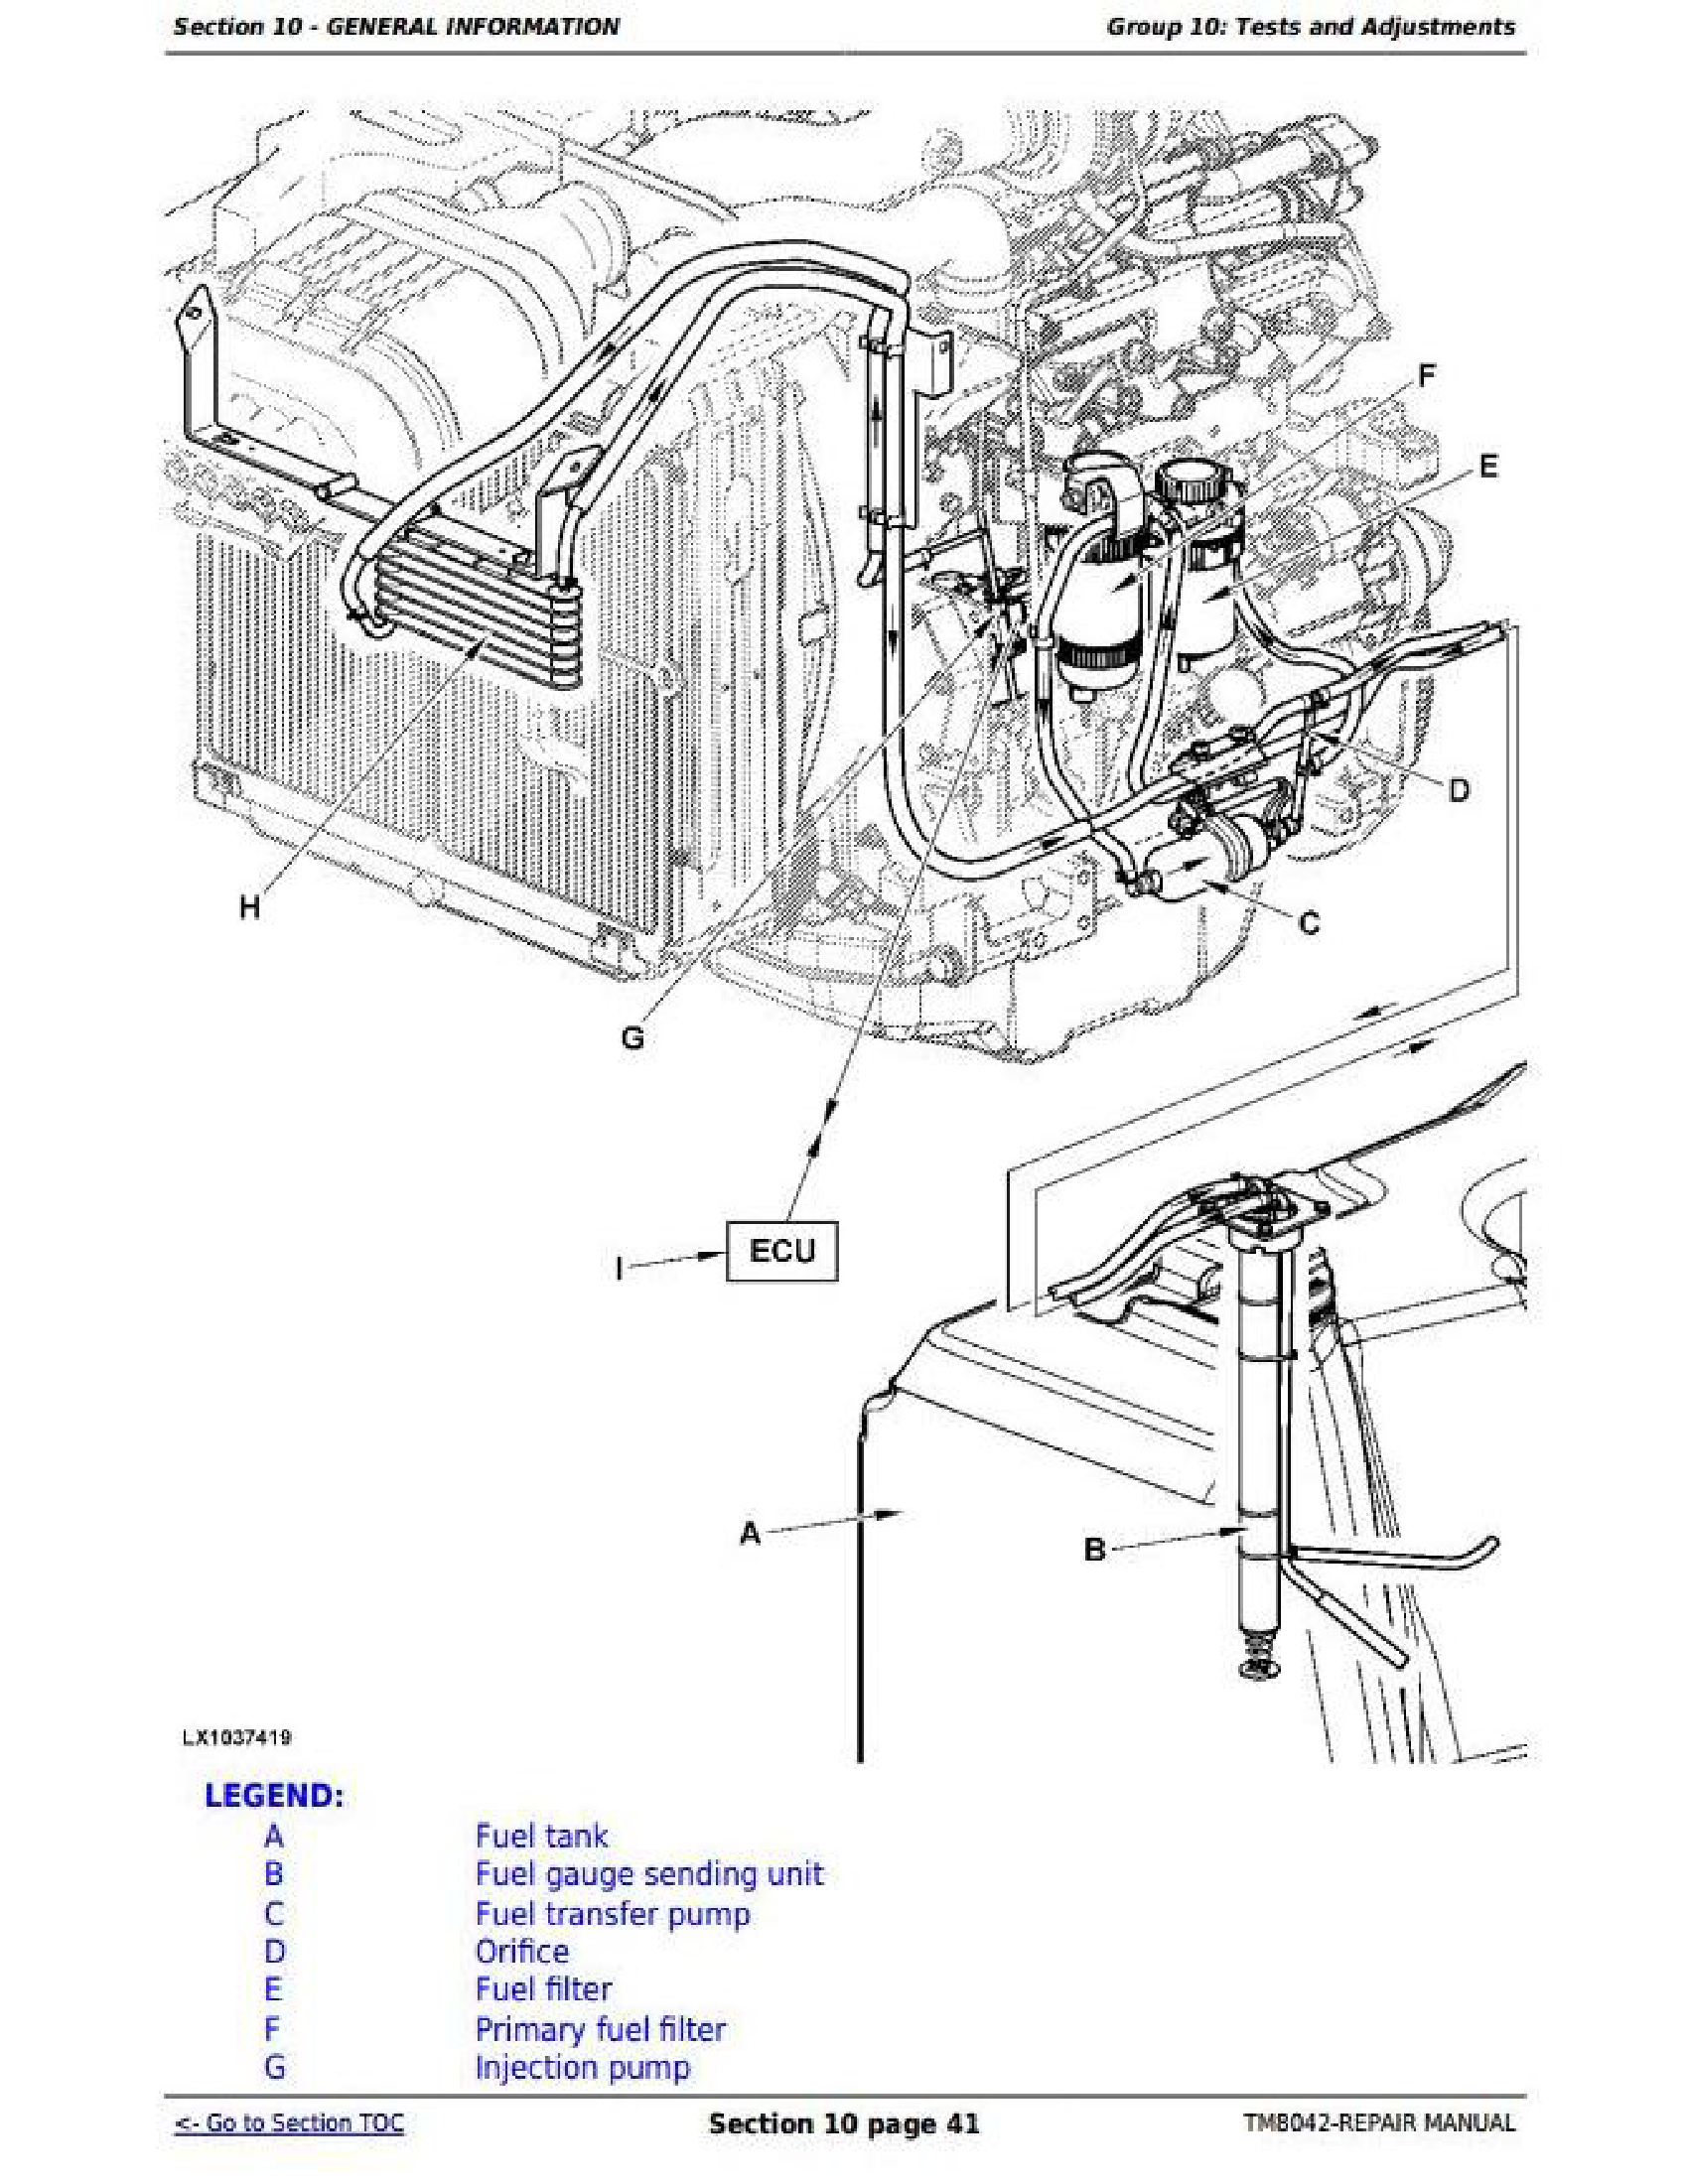 John Deere N500F manual pdf